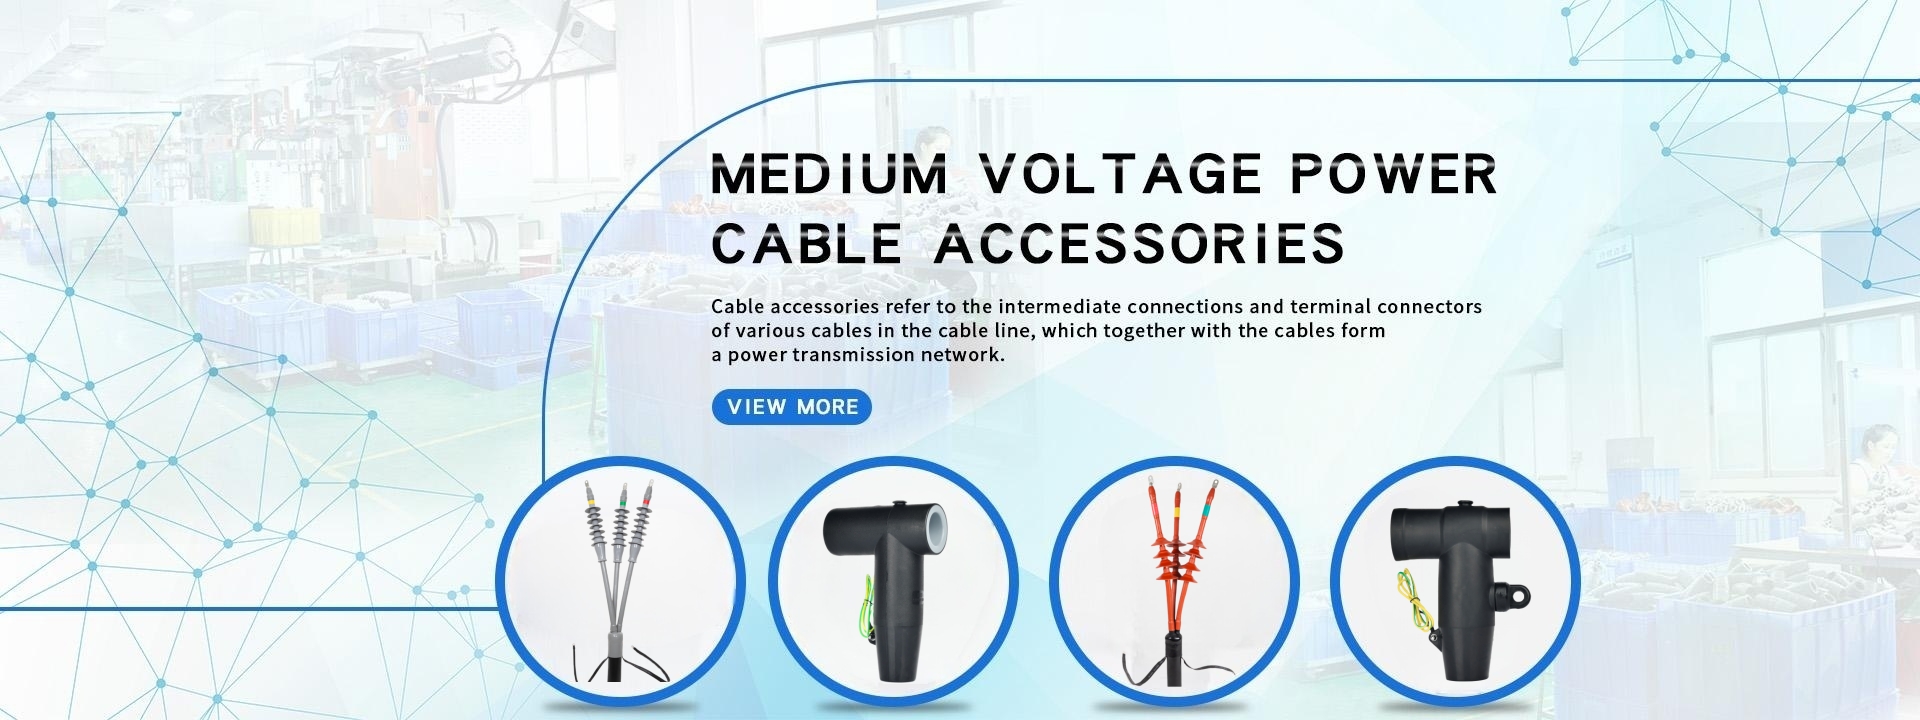 Medium voltage power cable accessories